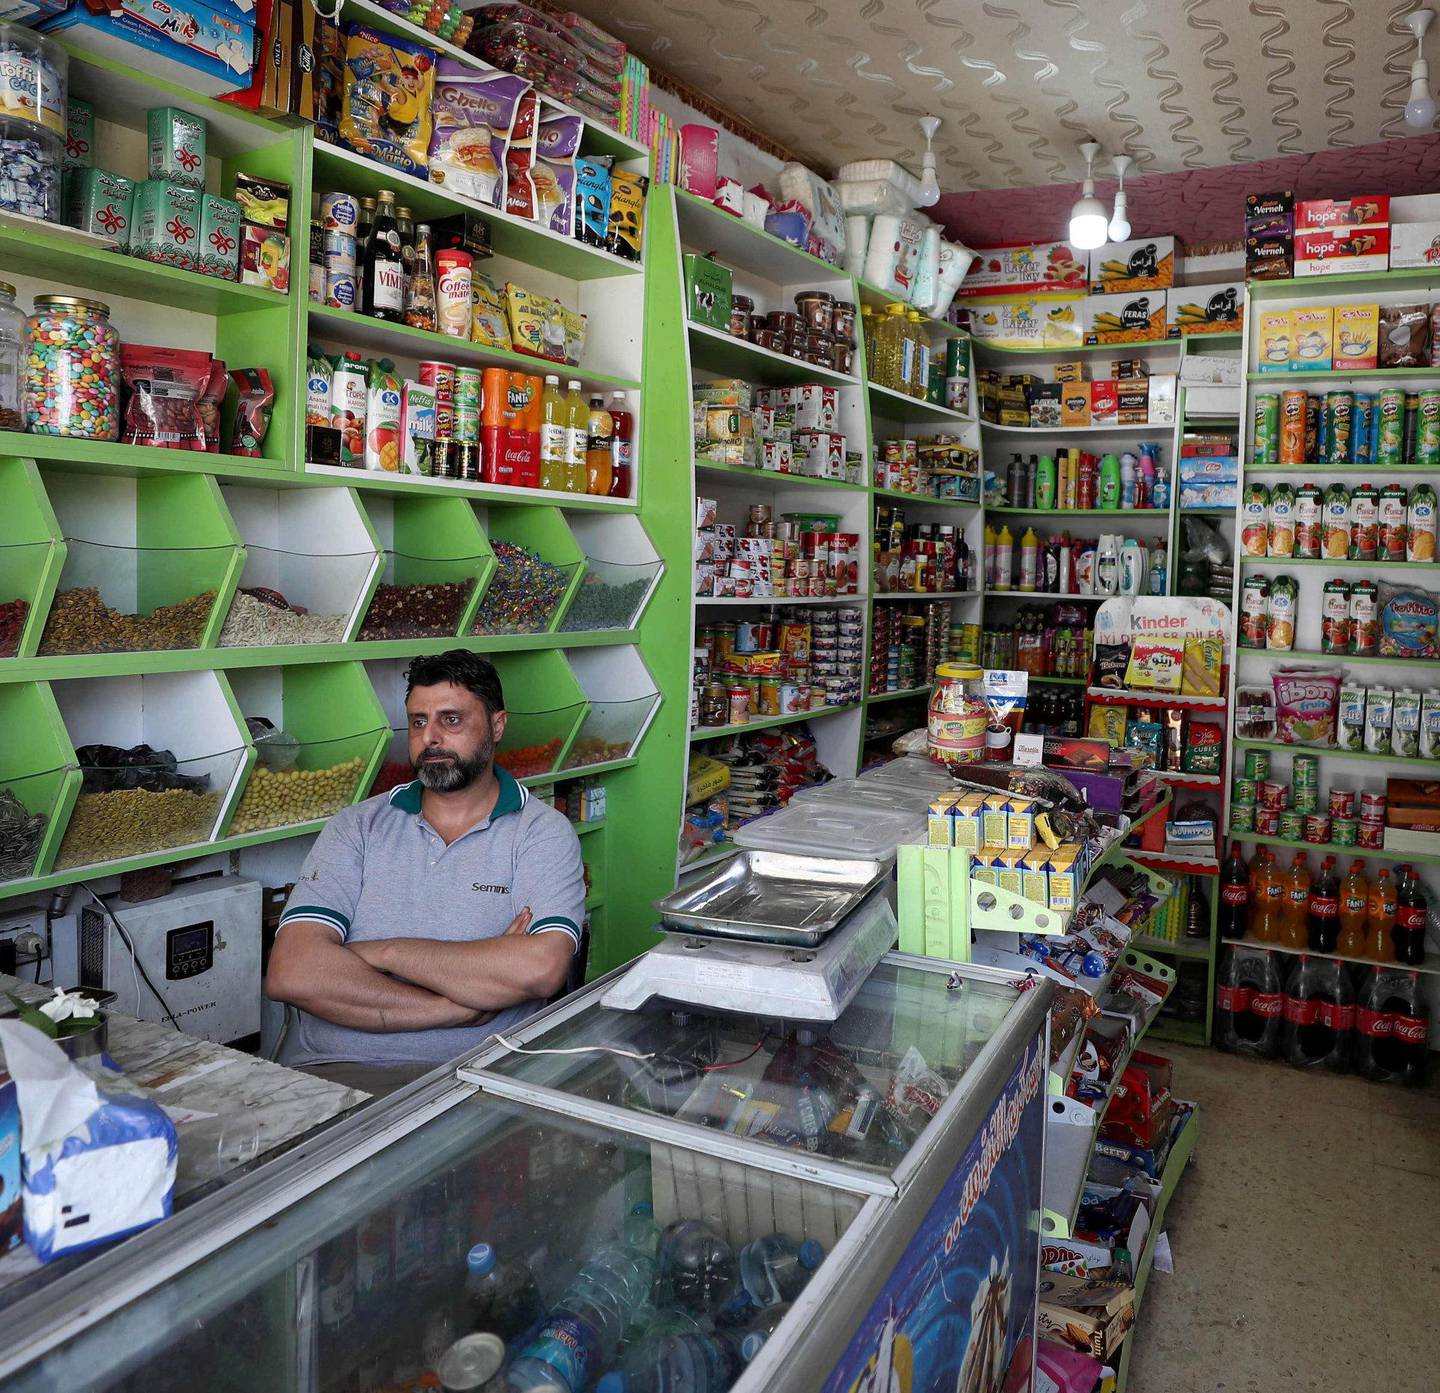 En syrisk kjøpmann venter på at kunder skal komme til butikken i byen Binnish i den nordvestlige provinsen Idlib i Syria. Bare siden april har den lokale valutaen falt med hele 70 prosent og folk opplever en akutt forverring av levekårene. Det har ført til nye demonstrasjoner mot det syriske regimet.